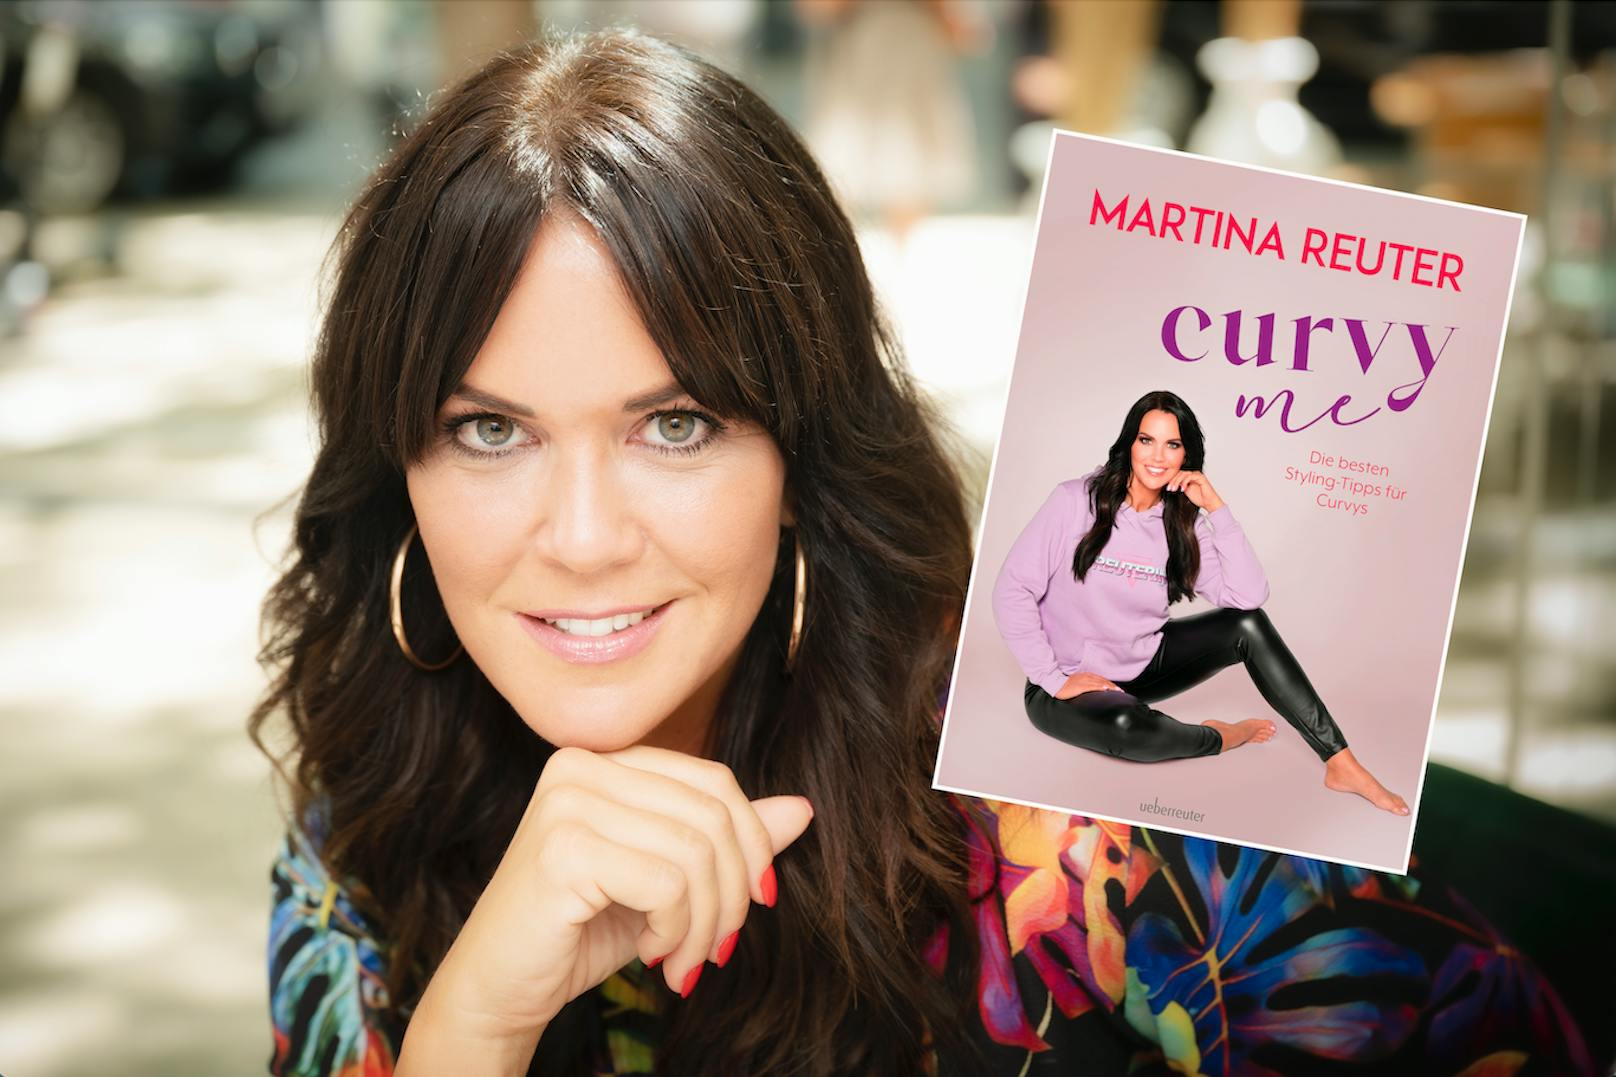 Style-Expertin Martina Reuter (43) mit ihrem Buch "Curvy me".